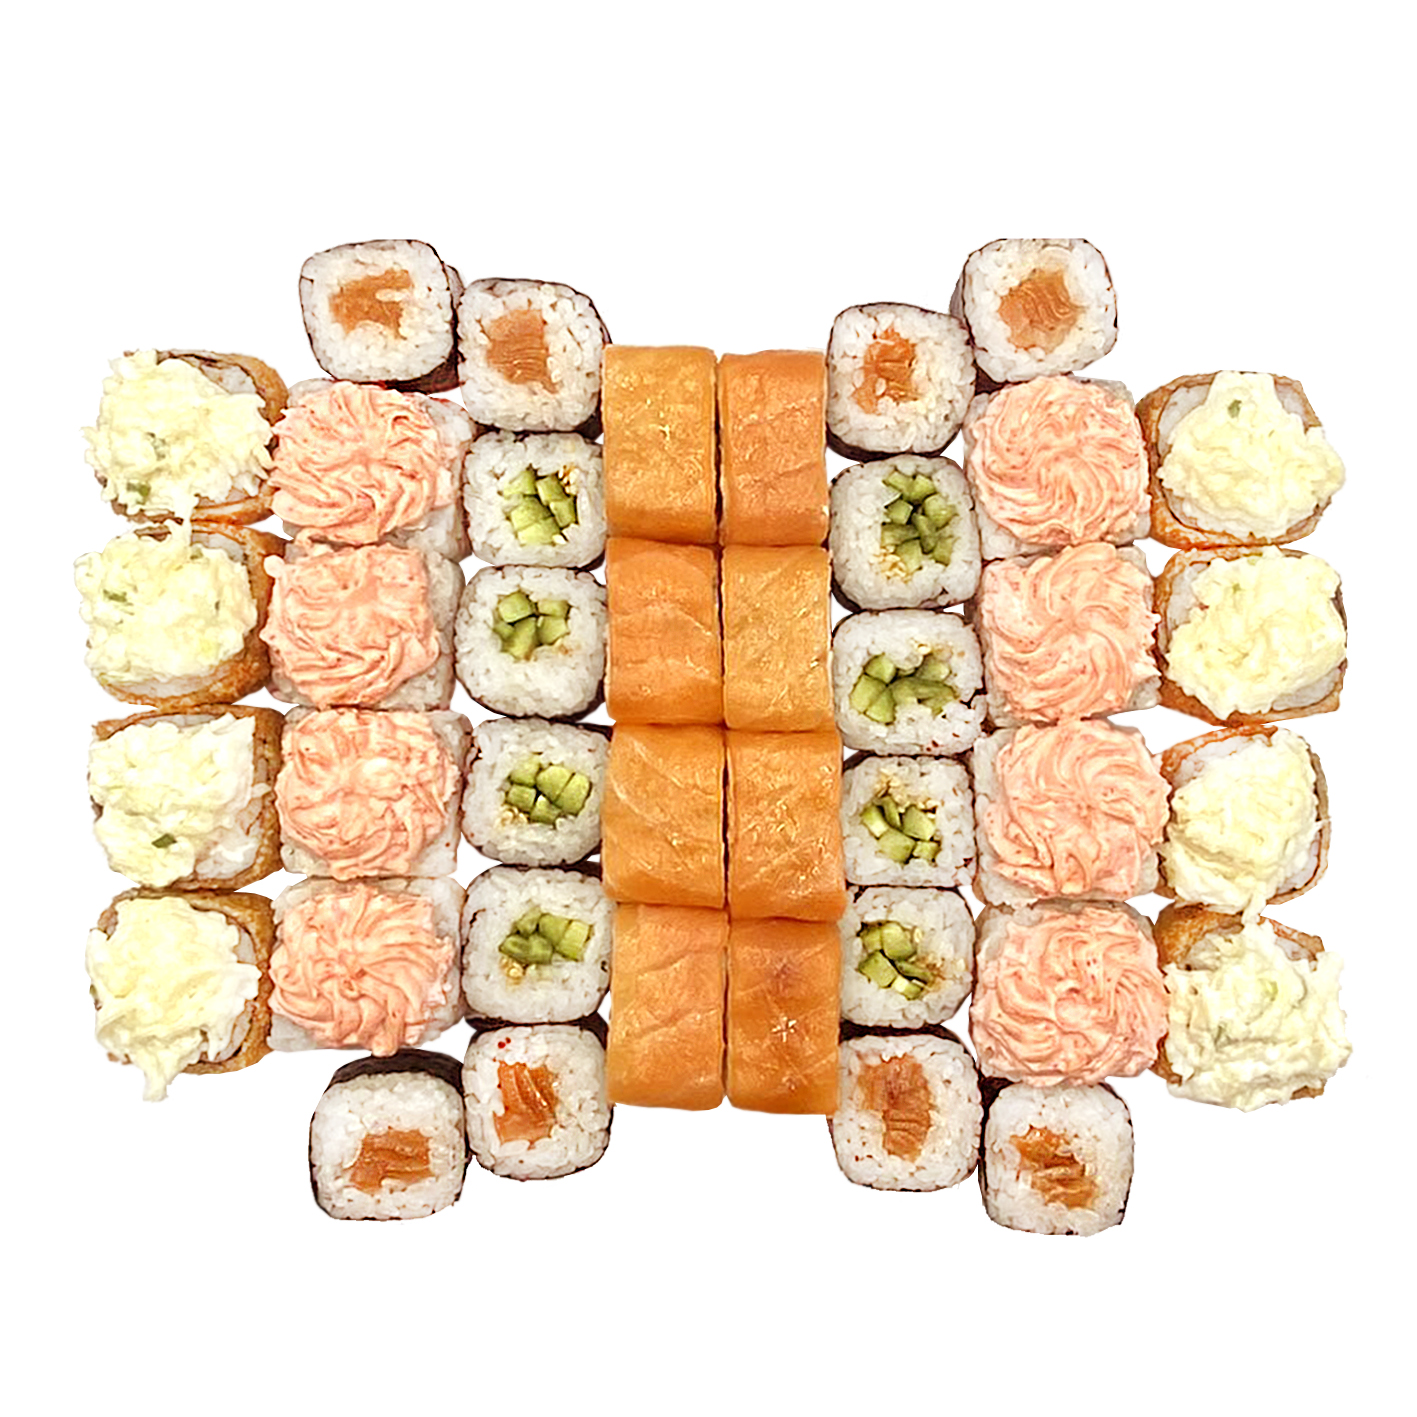 Заказать сеты суши в севастополе фото 90